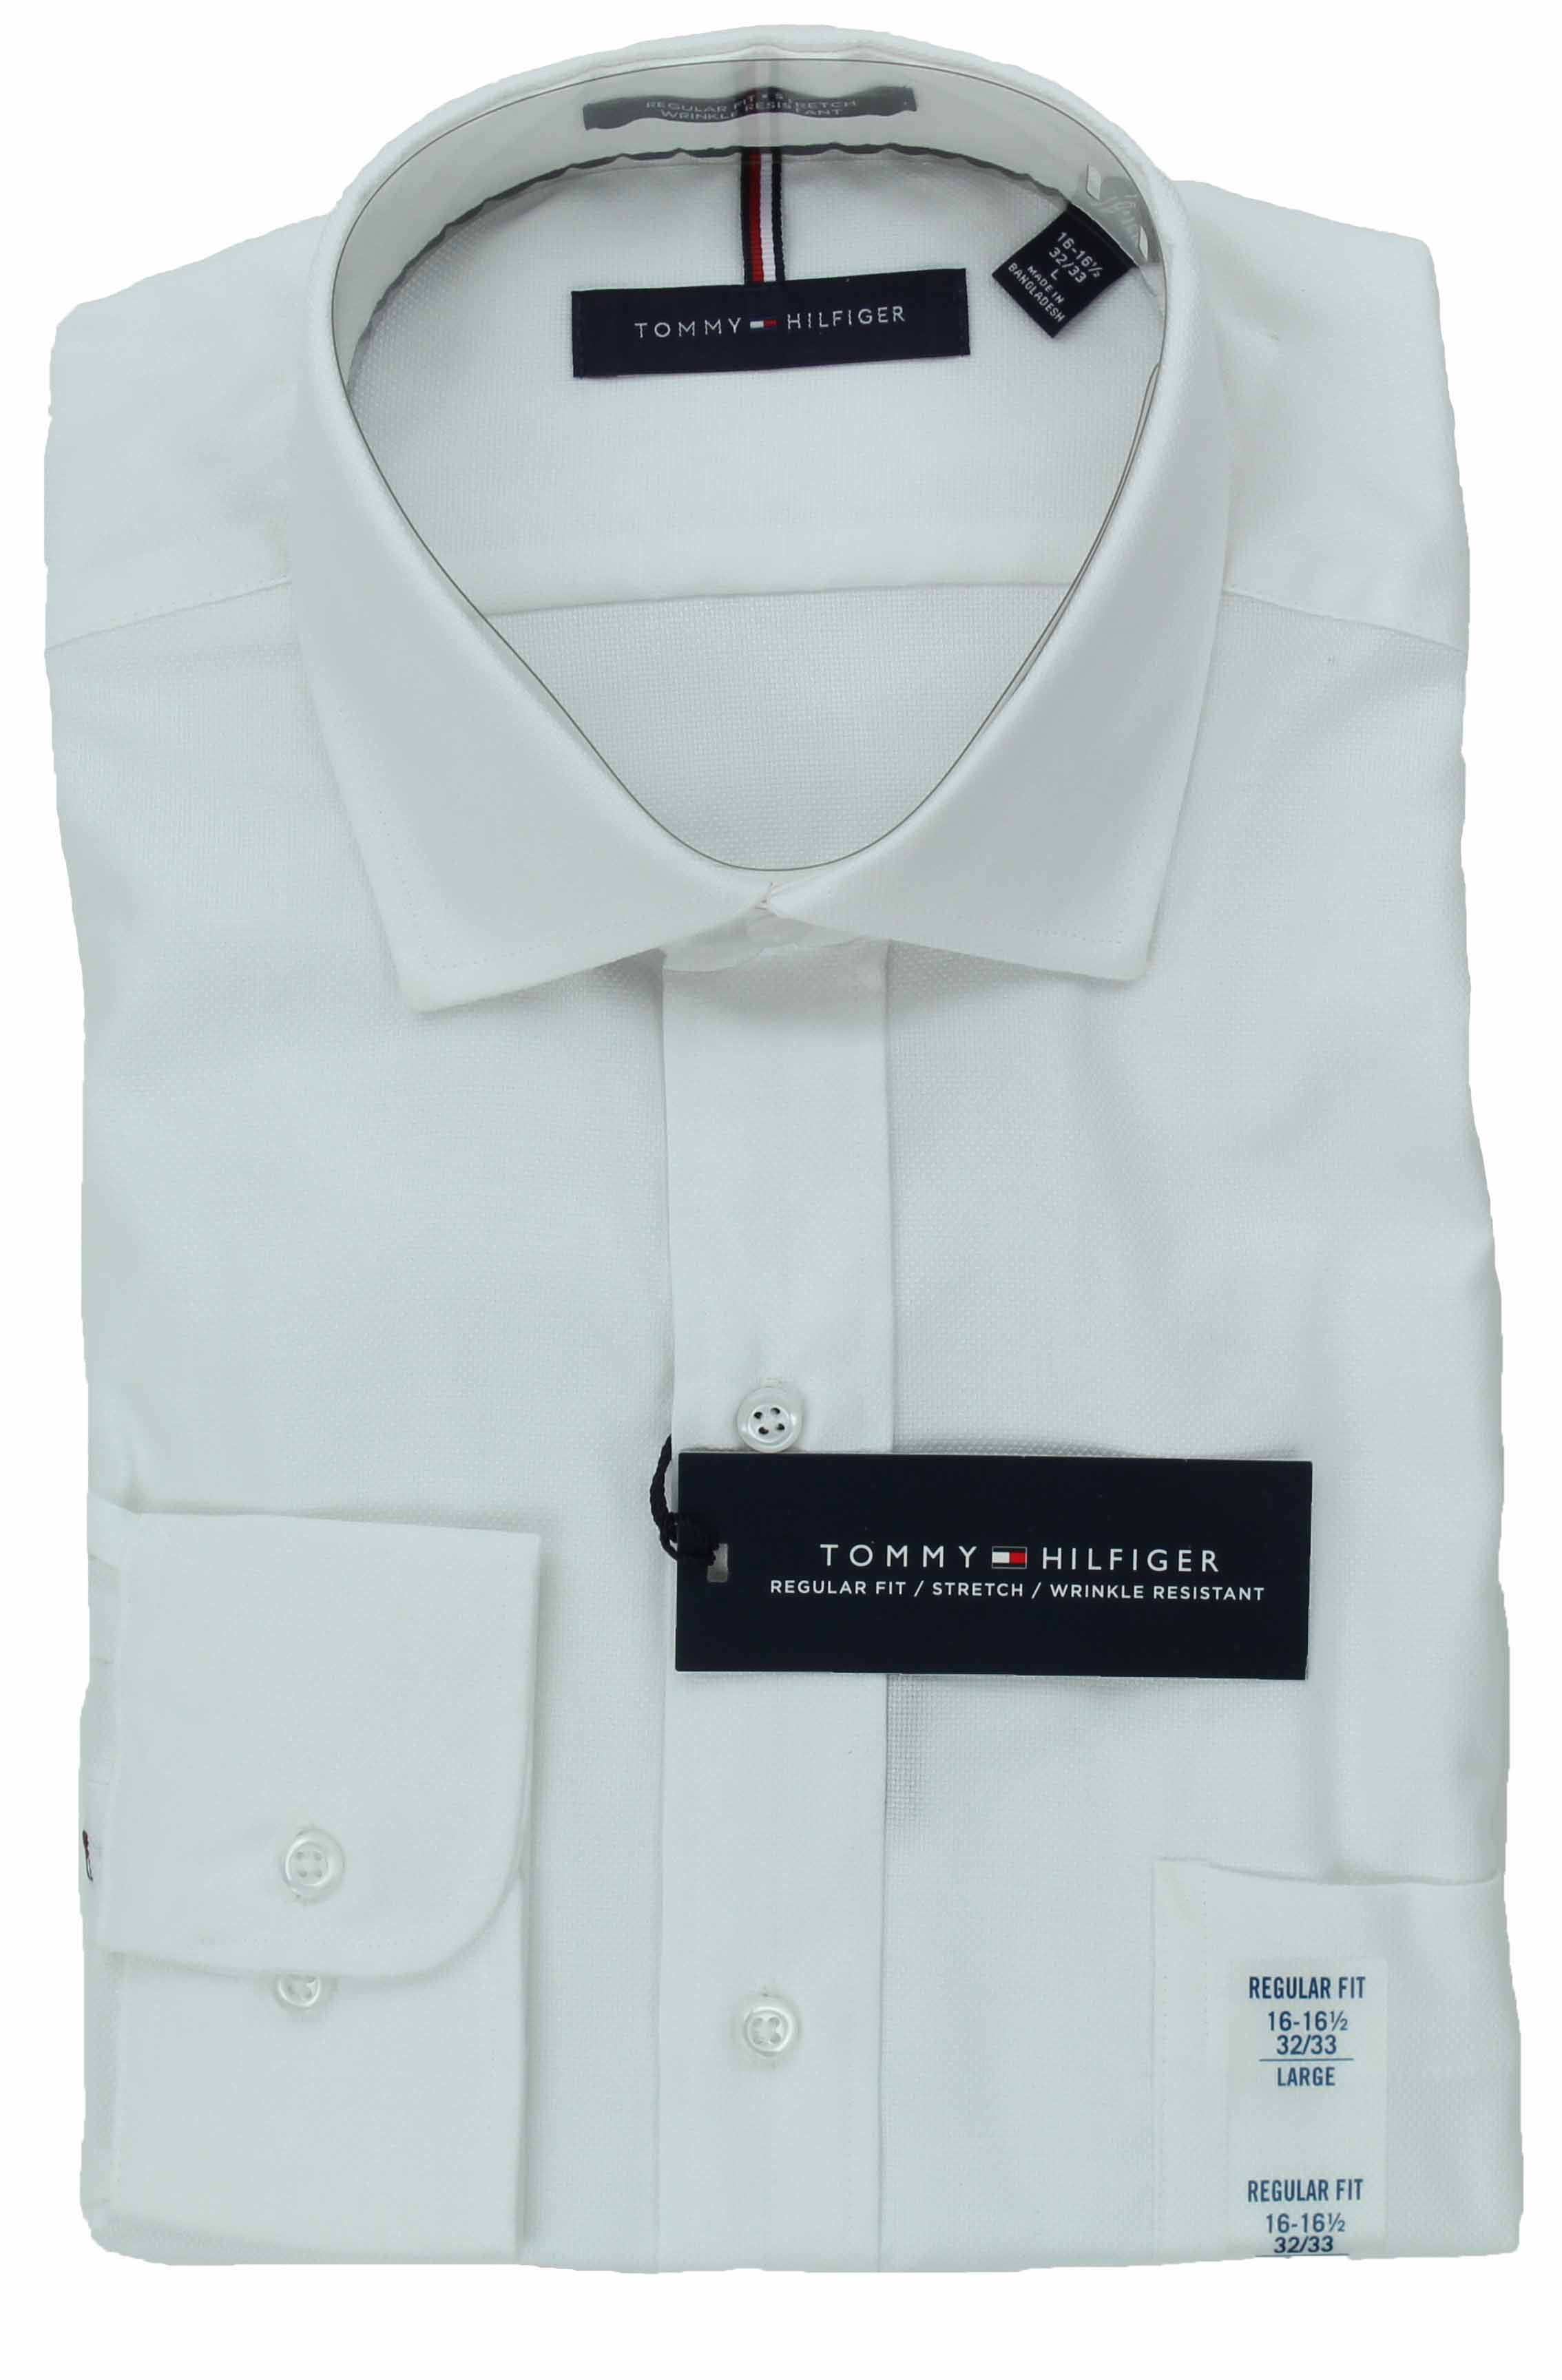 Tommy Hilfiger Men's Regular Fit Stretch Wrinkle Resistant Dress Shirt